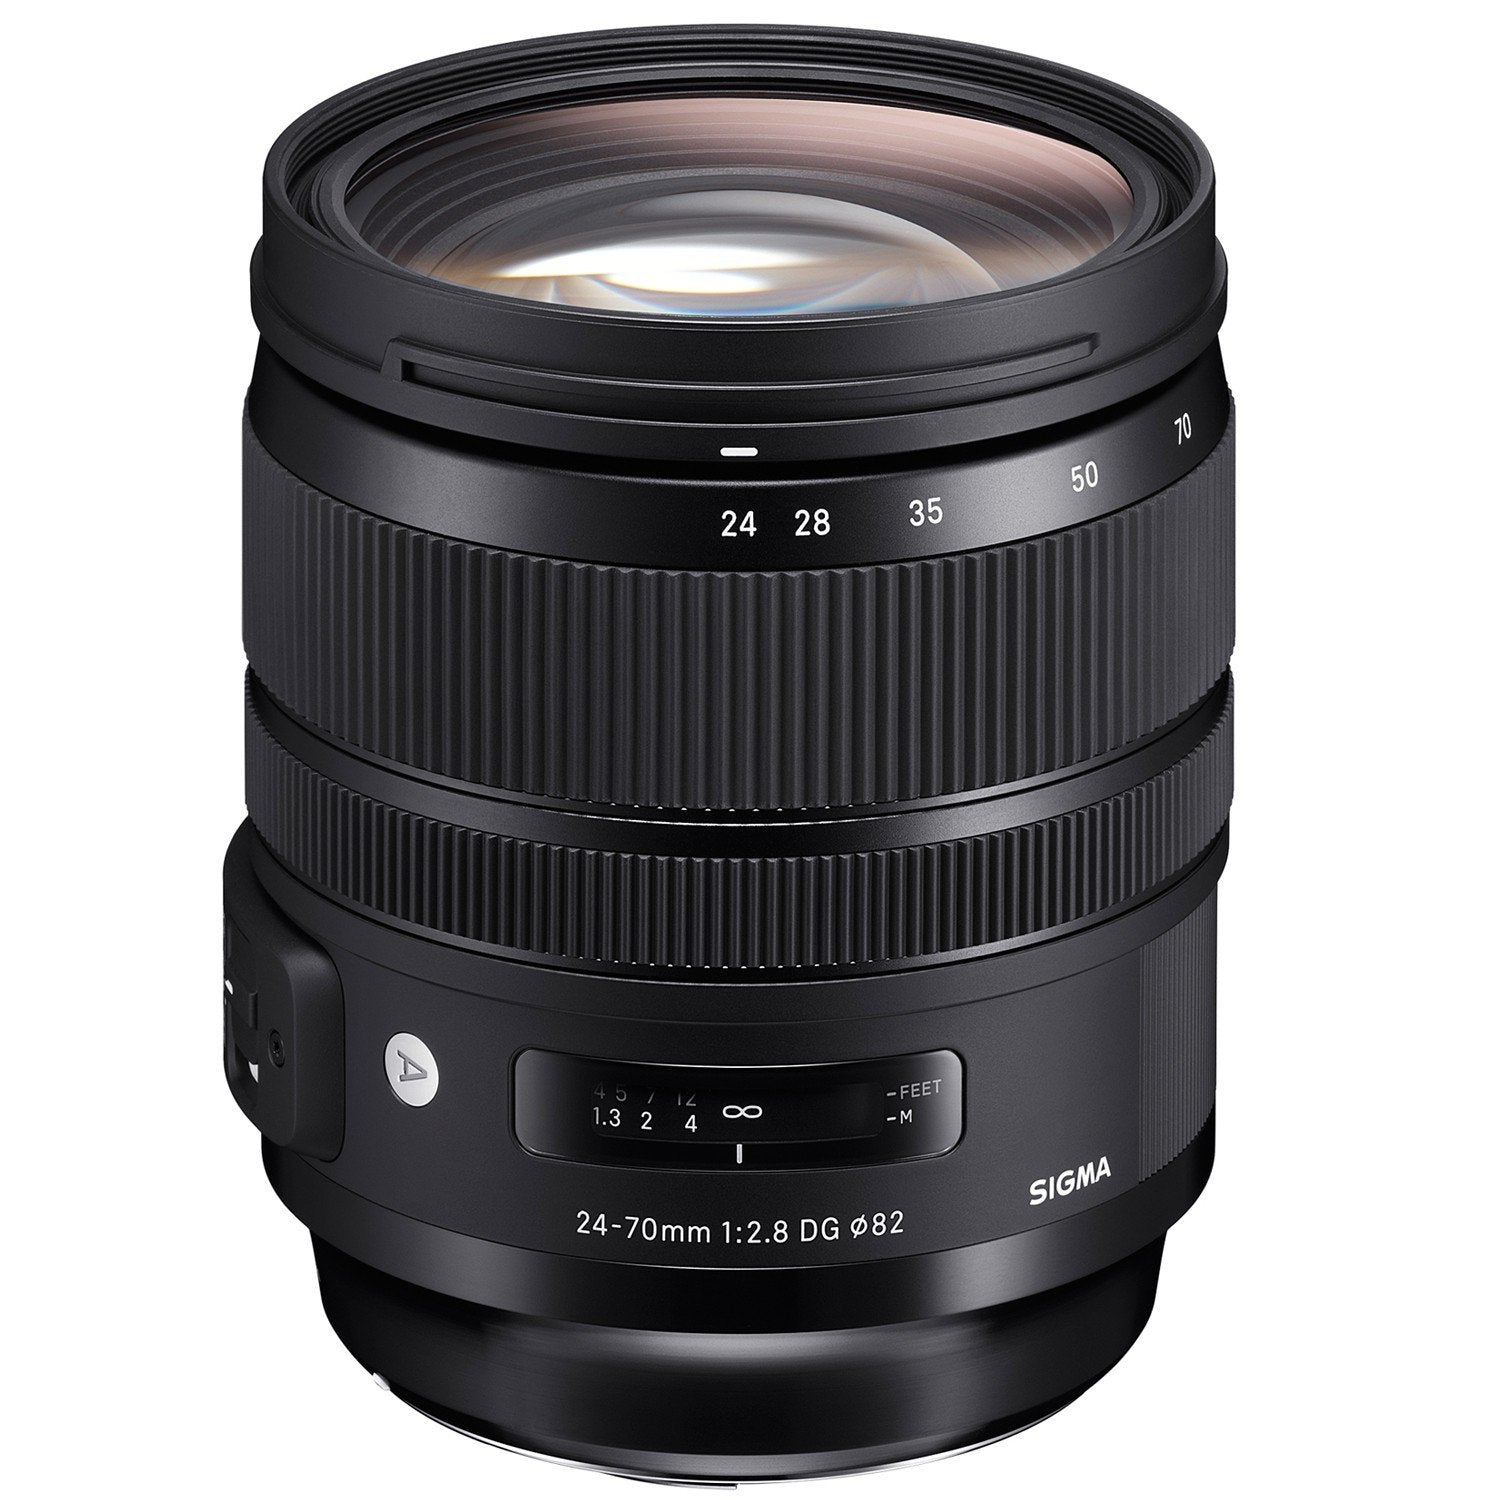 Sigma 24-70mm f/2.8 DG OS HSM Art Lens for Nikon DSLR Camera-Black